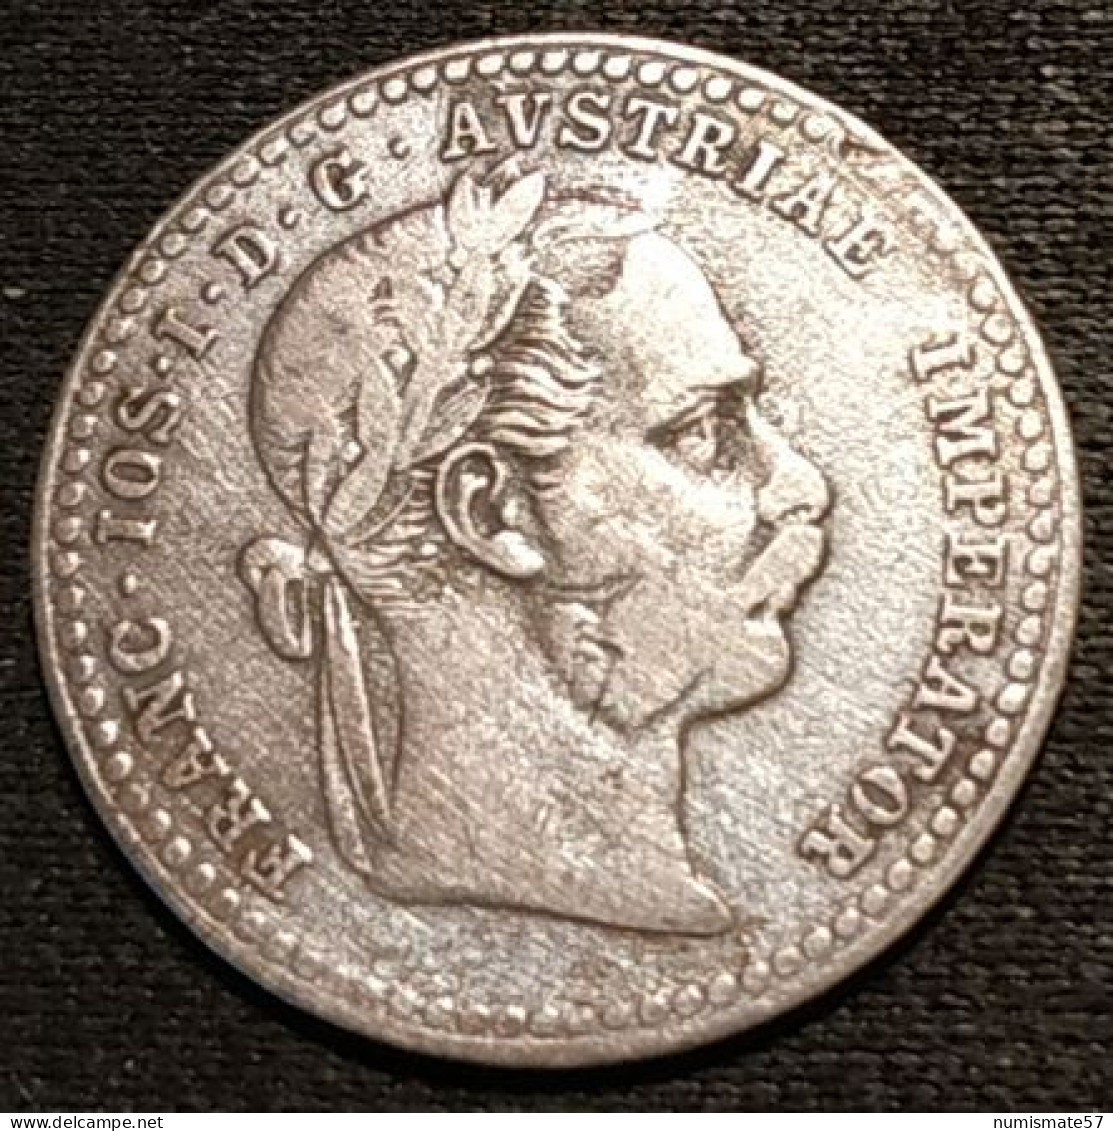 AUTRICHE - AUSTRIA - 10 KREUZER 1870 - Argent - Silver - Franz Joseph I - KM 2206 - Autriche